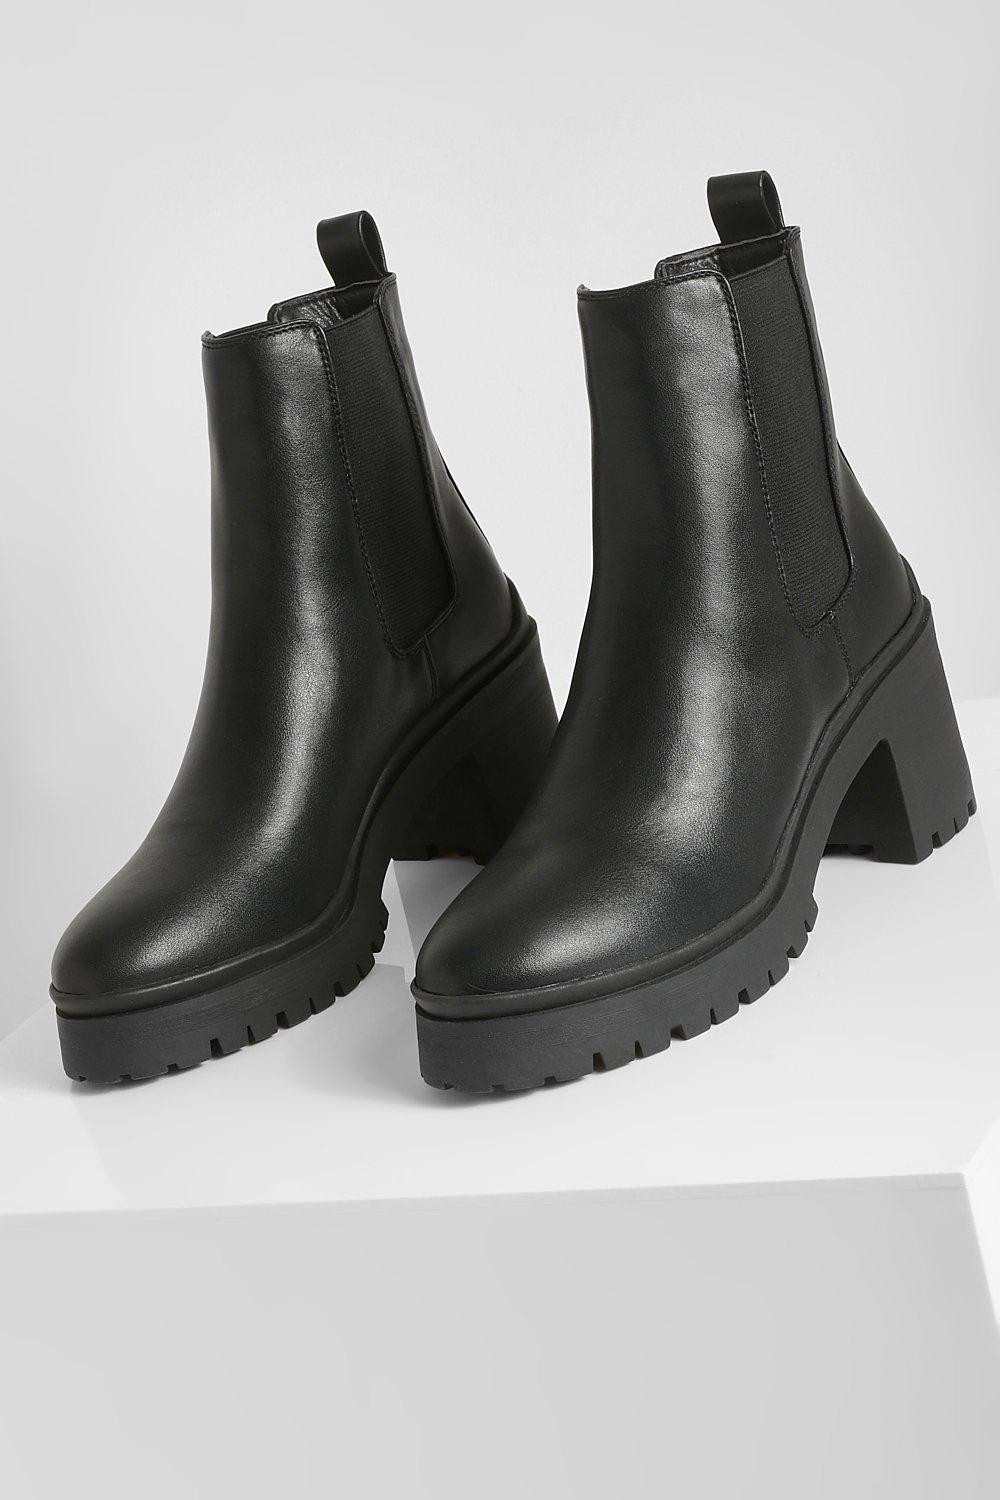 Botas Chelsea De Tacón Grueso de Boohoo de color Negro Mujer Zapatos de Botas de Botas de tacón y de tacón alto 